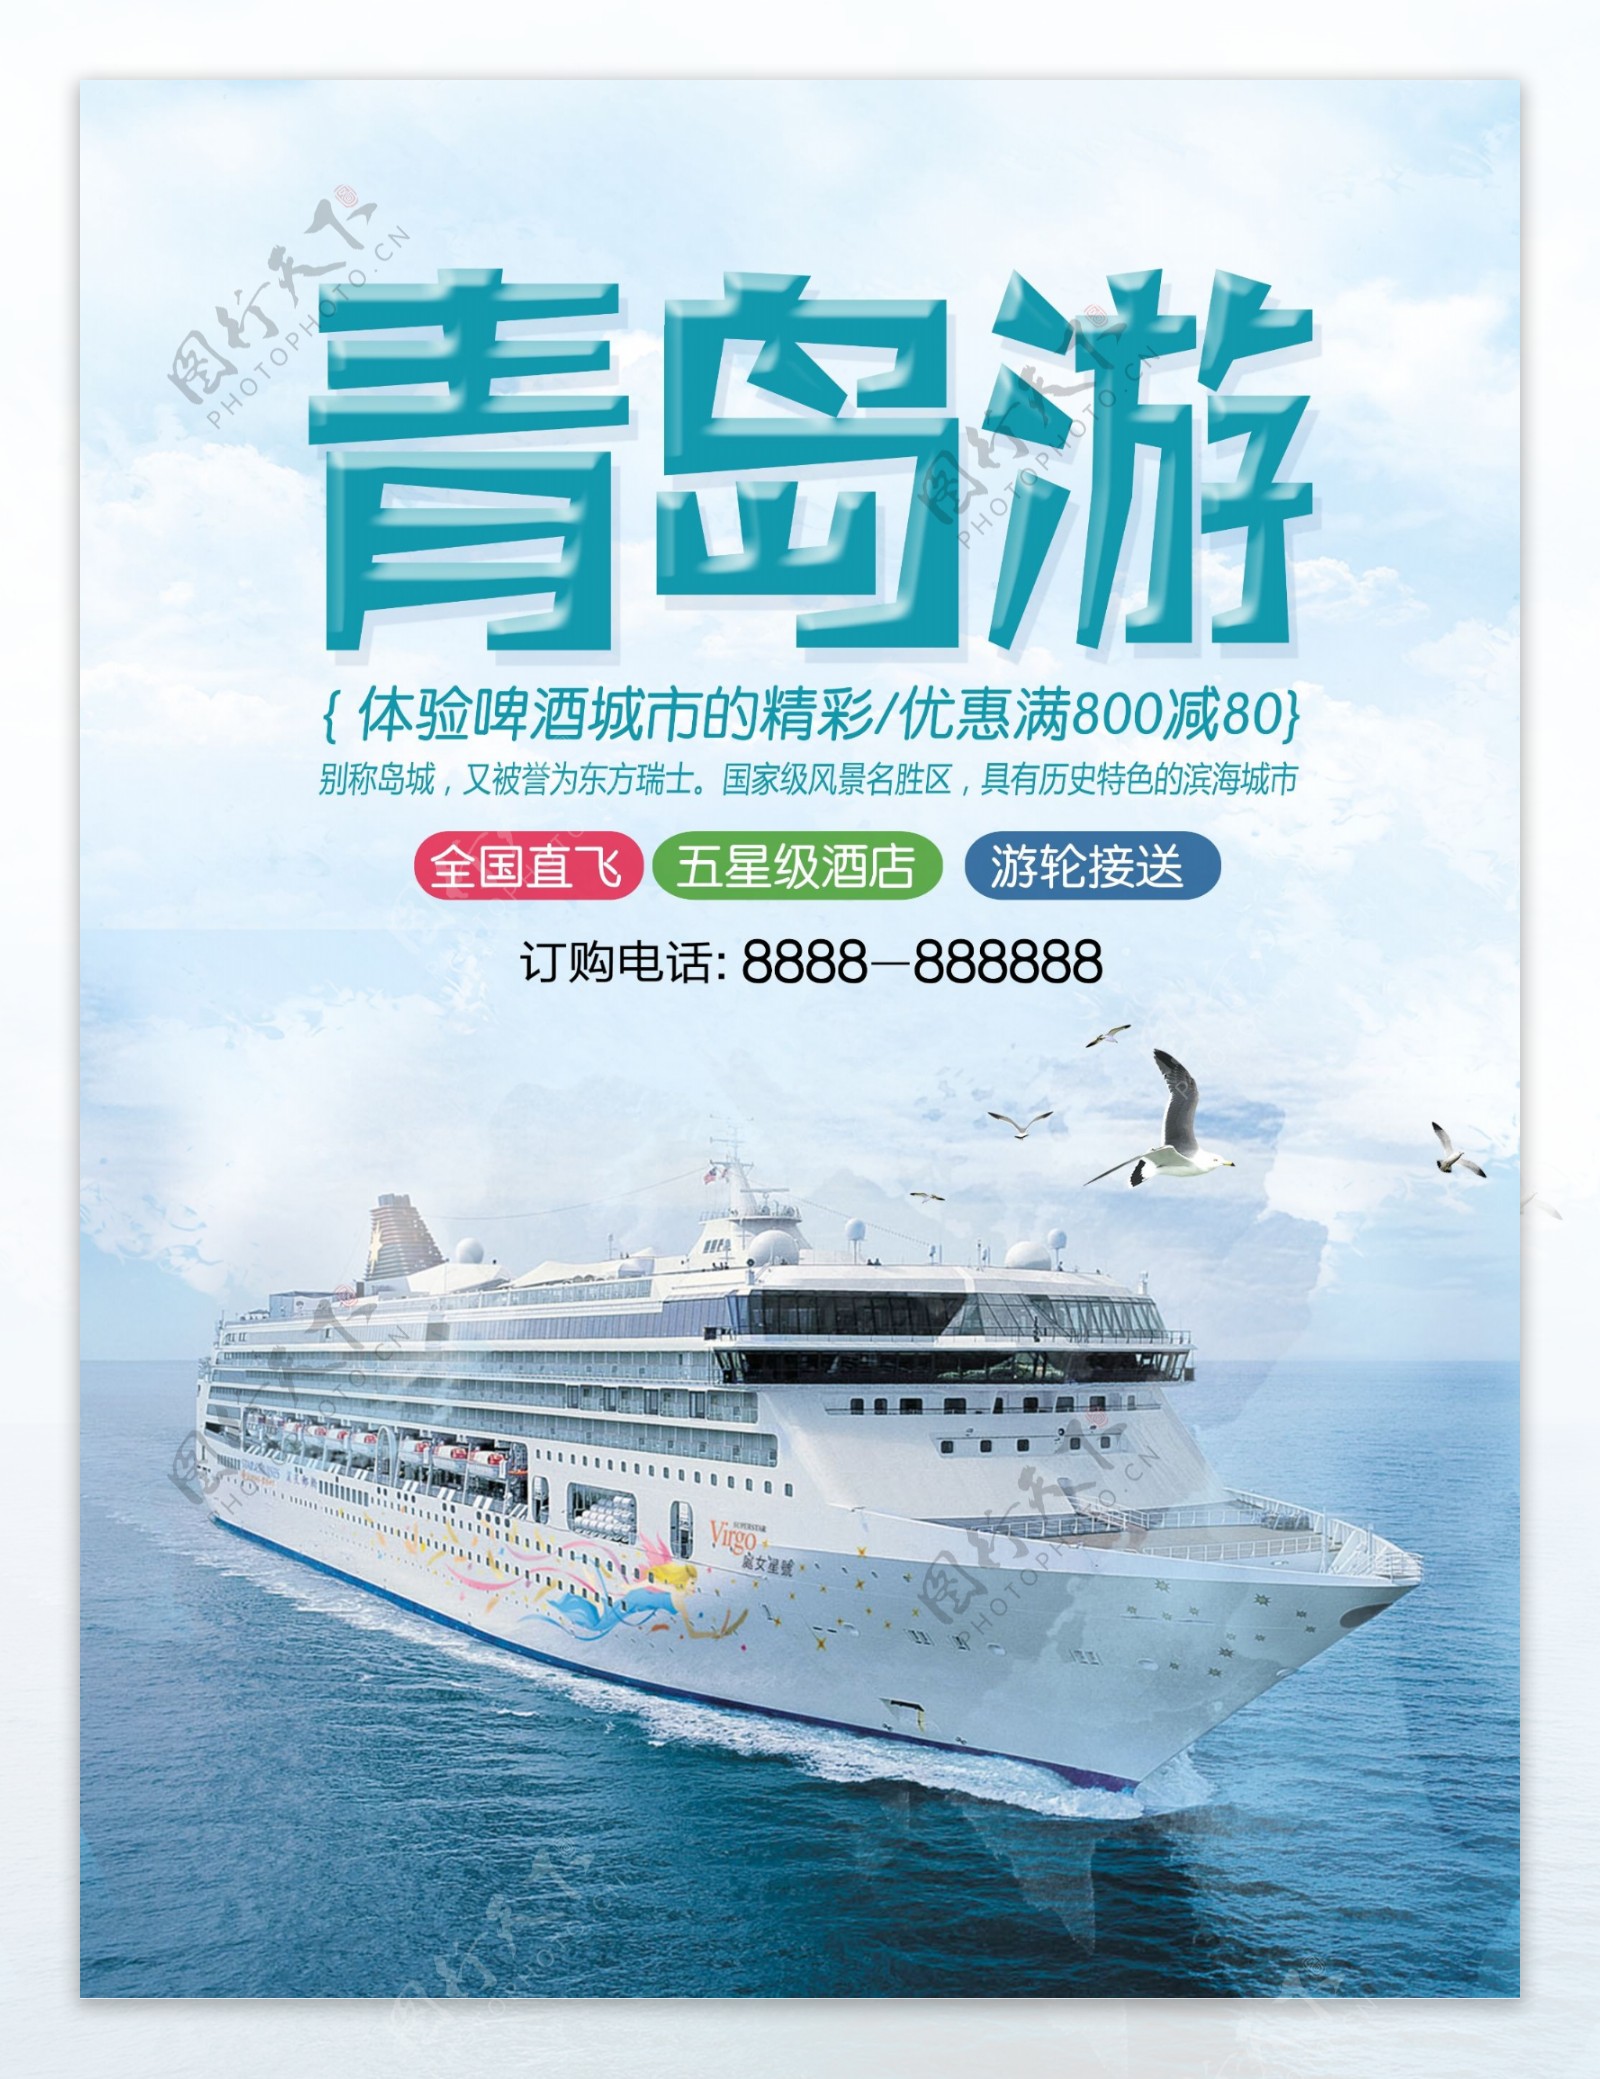 蓝色简约山东青岛海边游旅游优惠促销海报